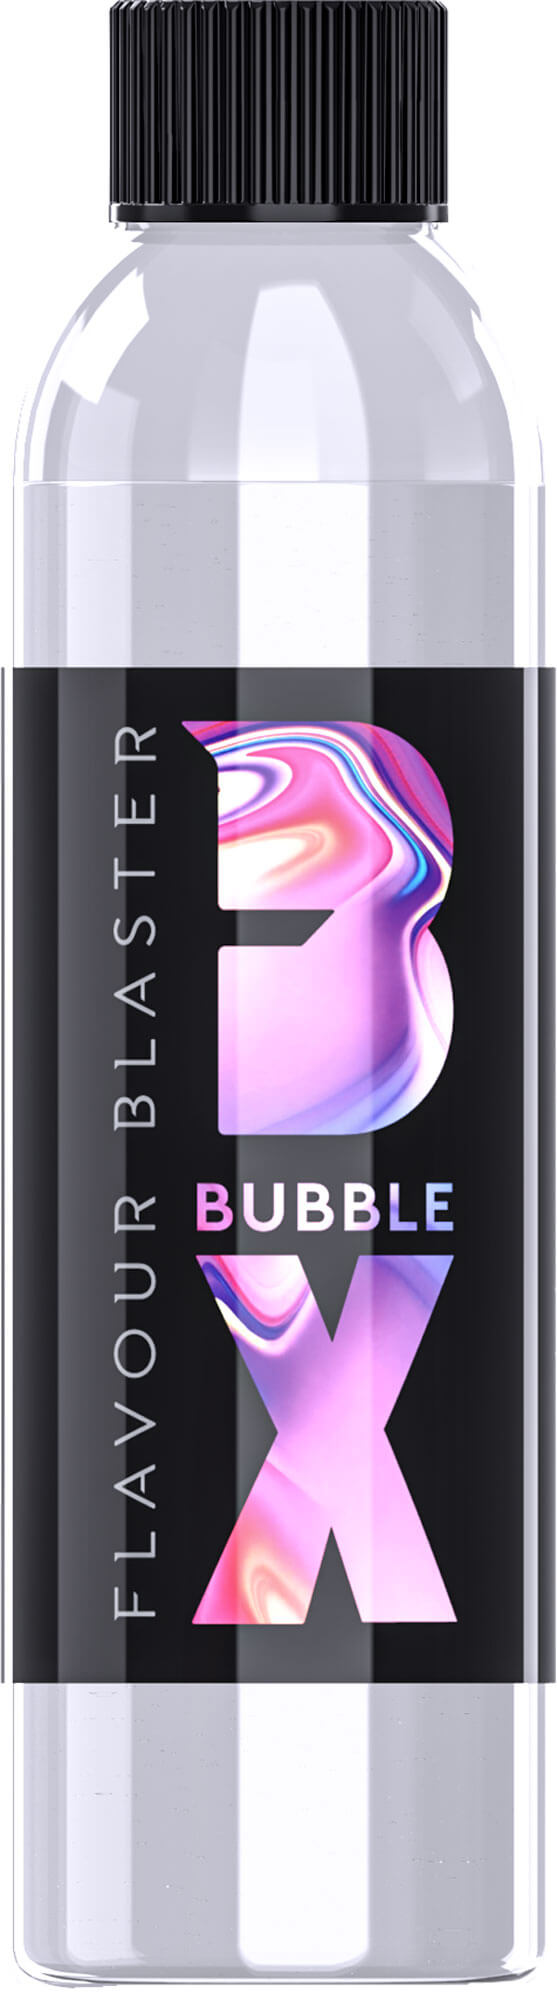 Bubble X für Flavour Blaster (180ml)